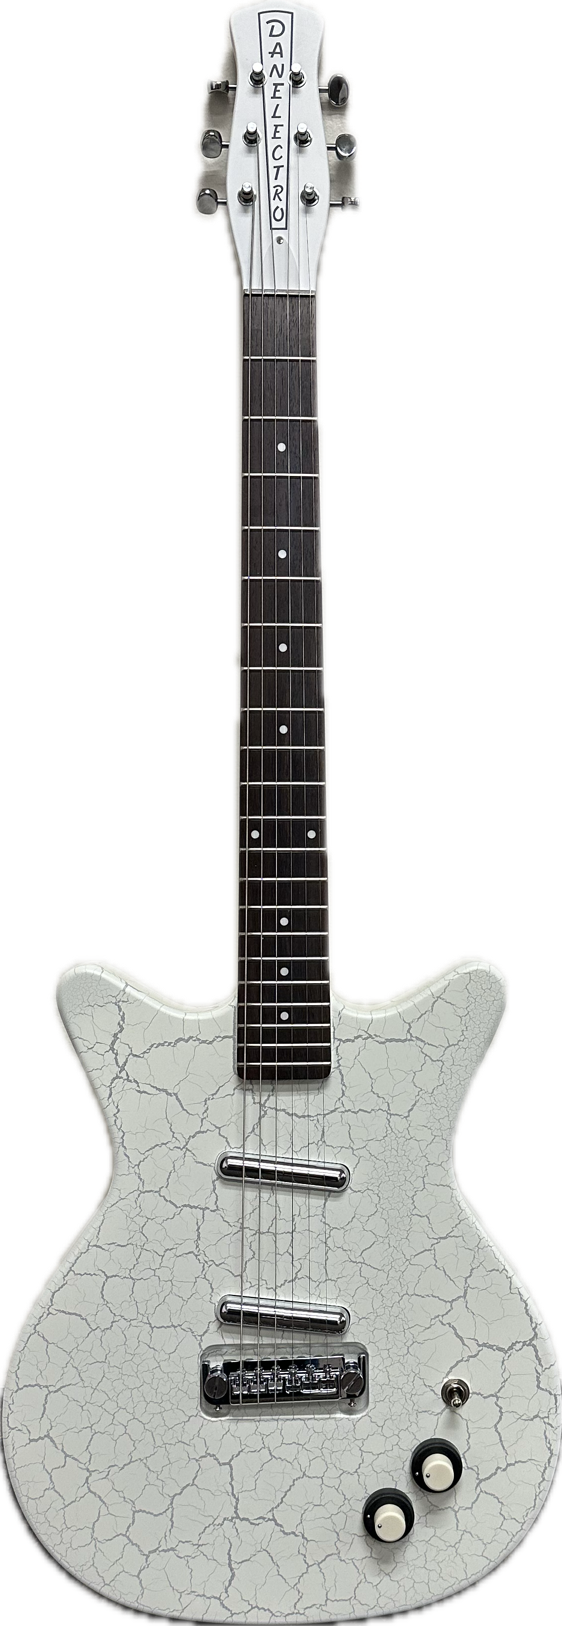 Danelectro 59 NOS+ Electric Guitar (White Crackle)